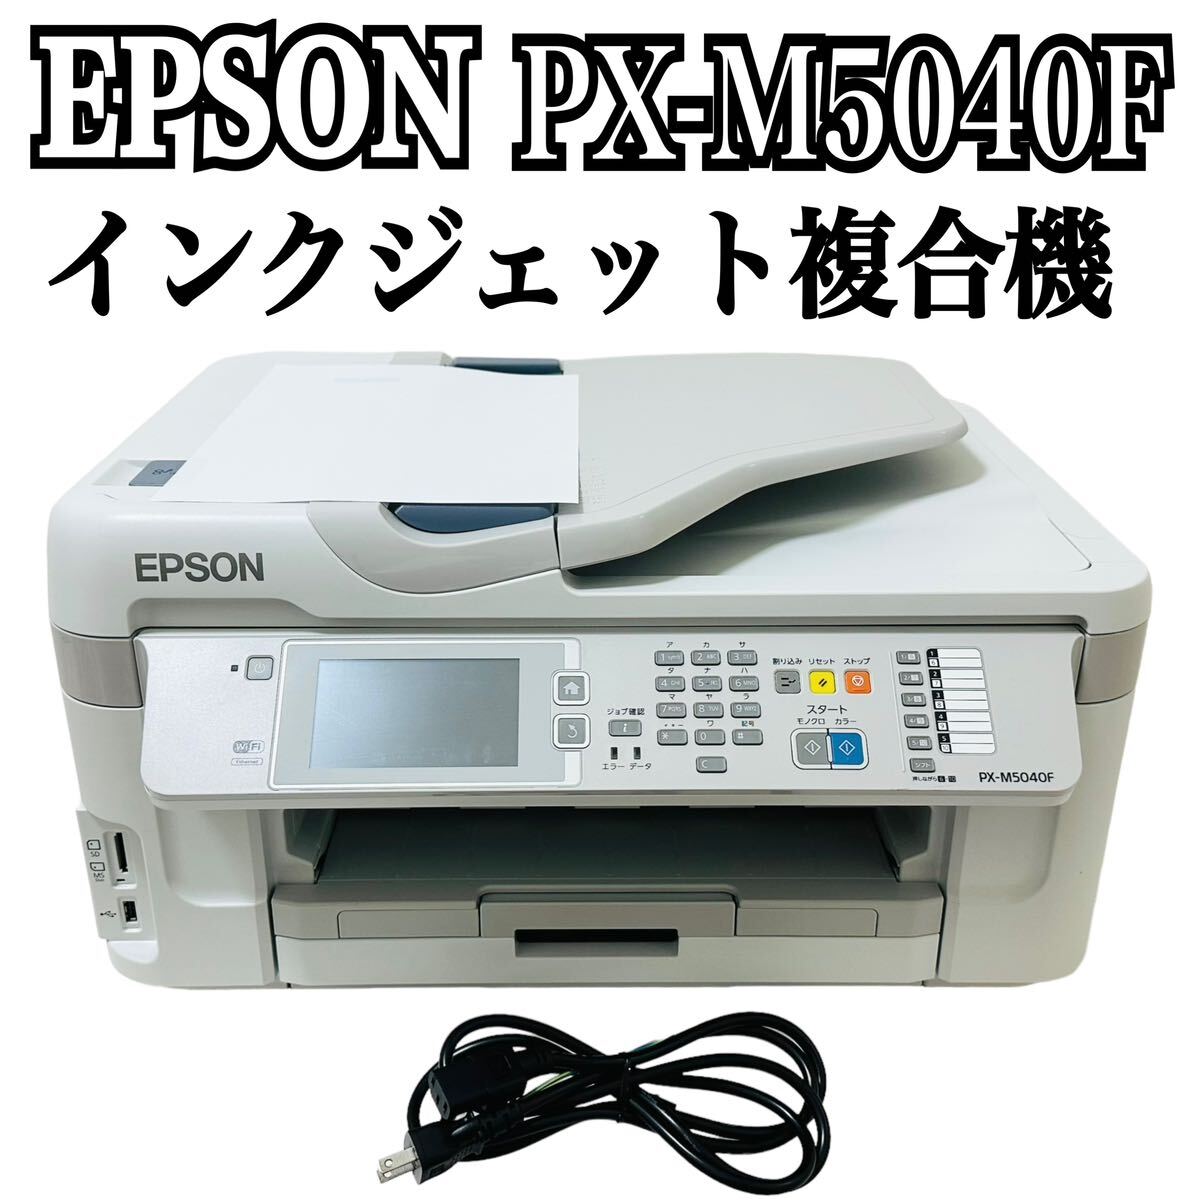 ★ 人気商品 ★ EPSON エプソン インクジェット複合機 PX-M5040F インクジェット プリンター A3 複合機 ビジネスプリンター カセット A4_画像1